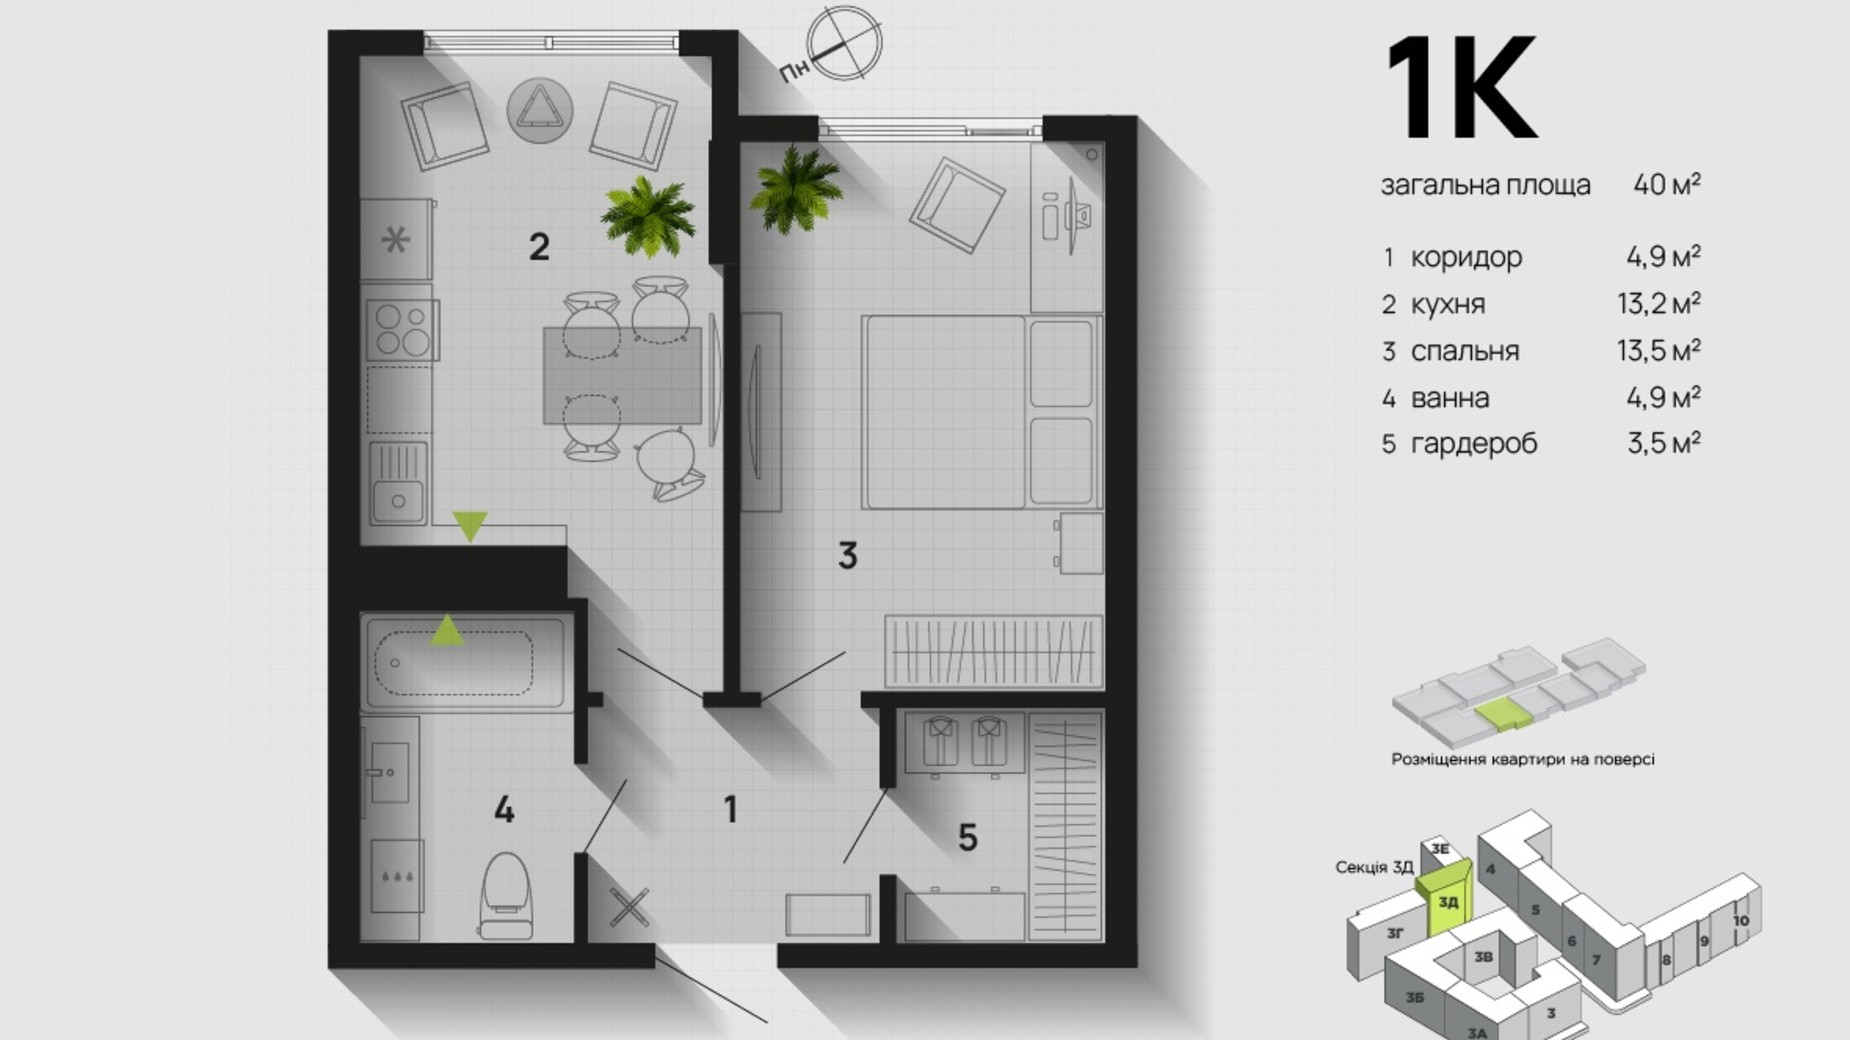 Планировка 1-комнатной квартиры в ЖК Парковая Аллея 40 м², фото 611343